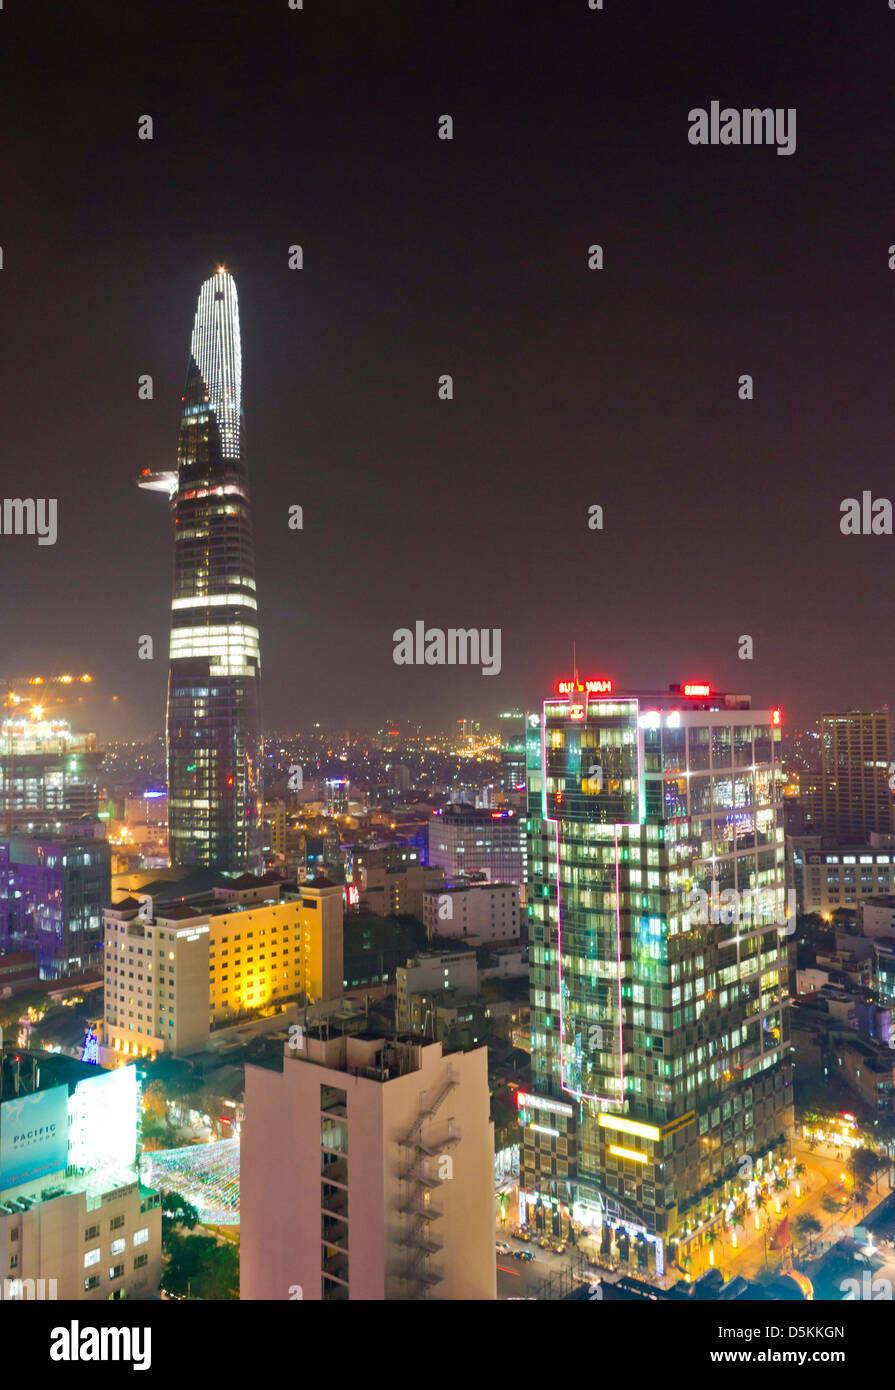 Saigon è ora noto come Ho Chi Minh city ed è una città moderna con alti grattacieli. Foto Stock